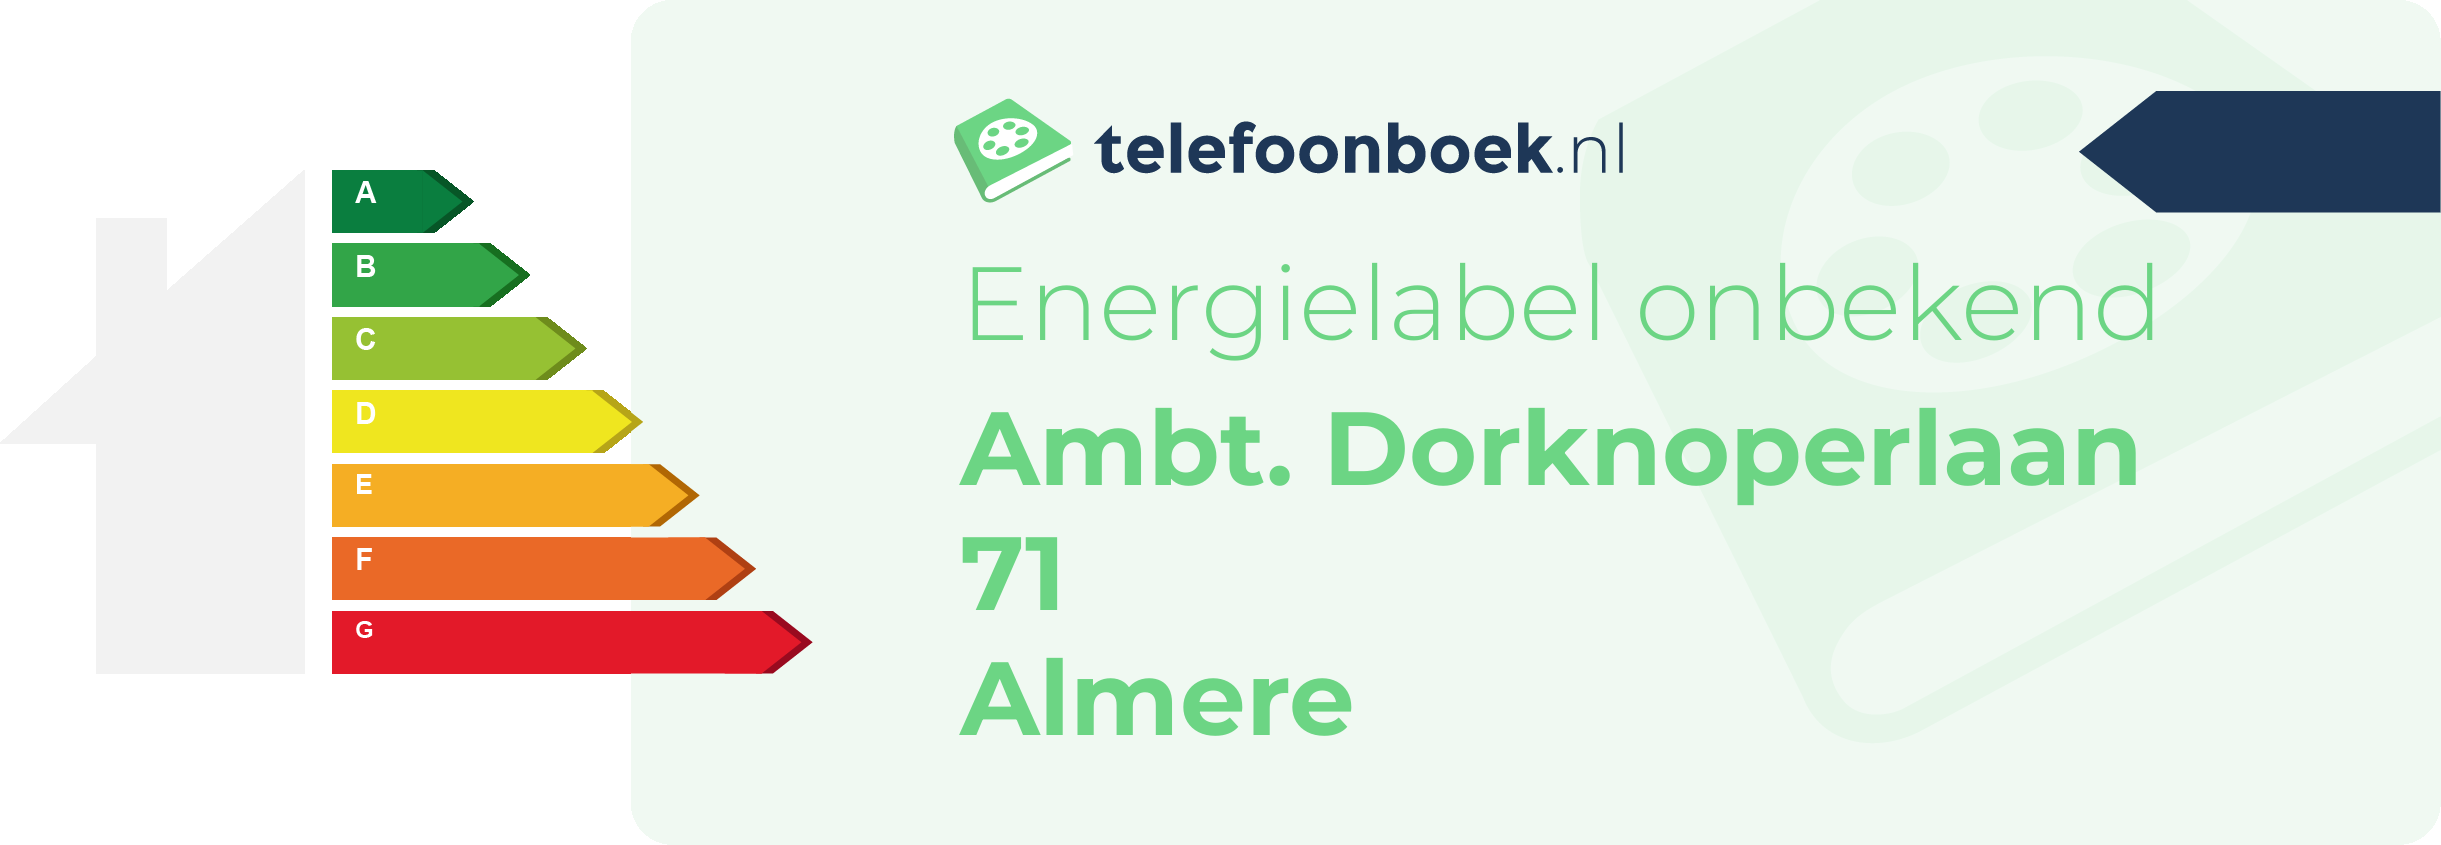 Energielabel Ambt. Dorknoperlaan 71 Almere